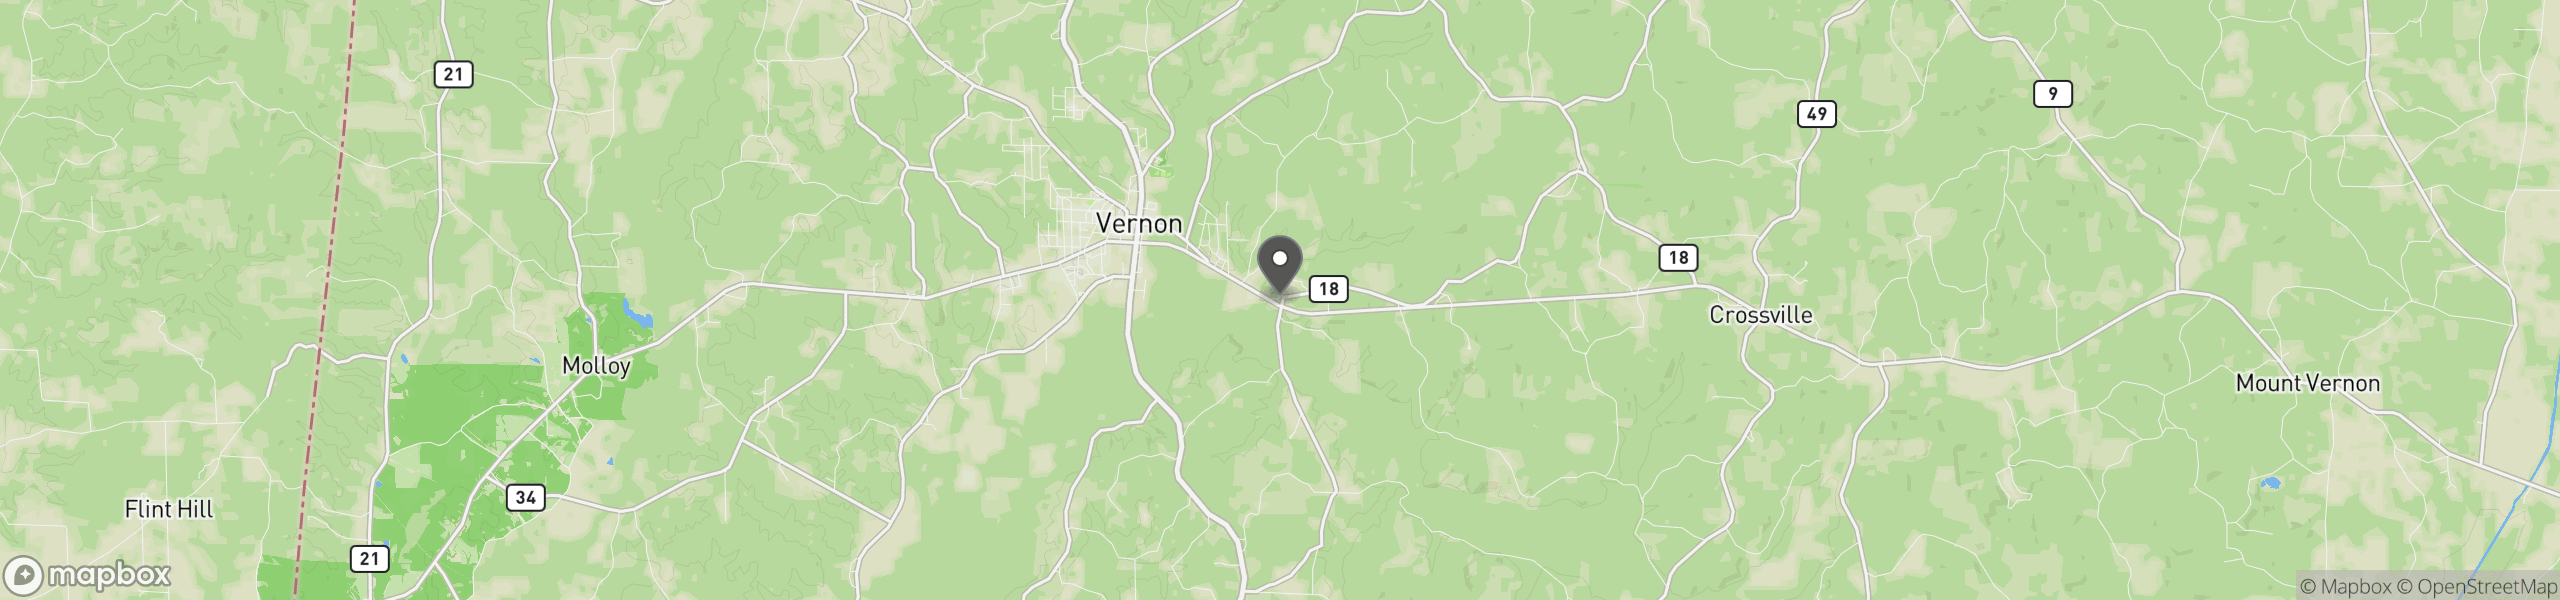 Vernon, AL 35592